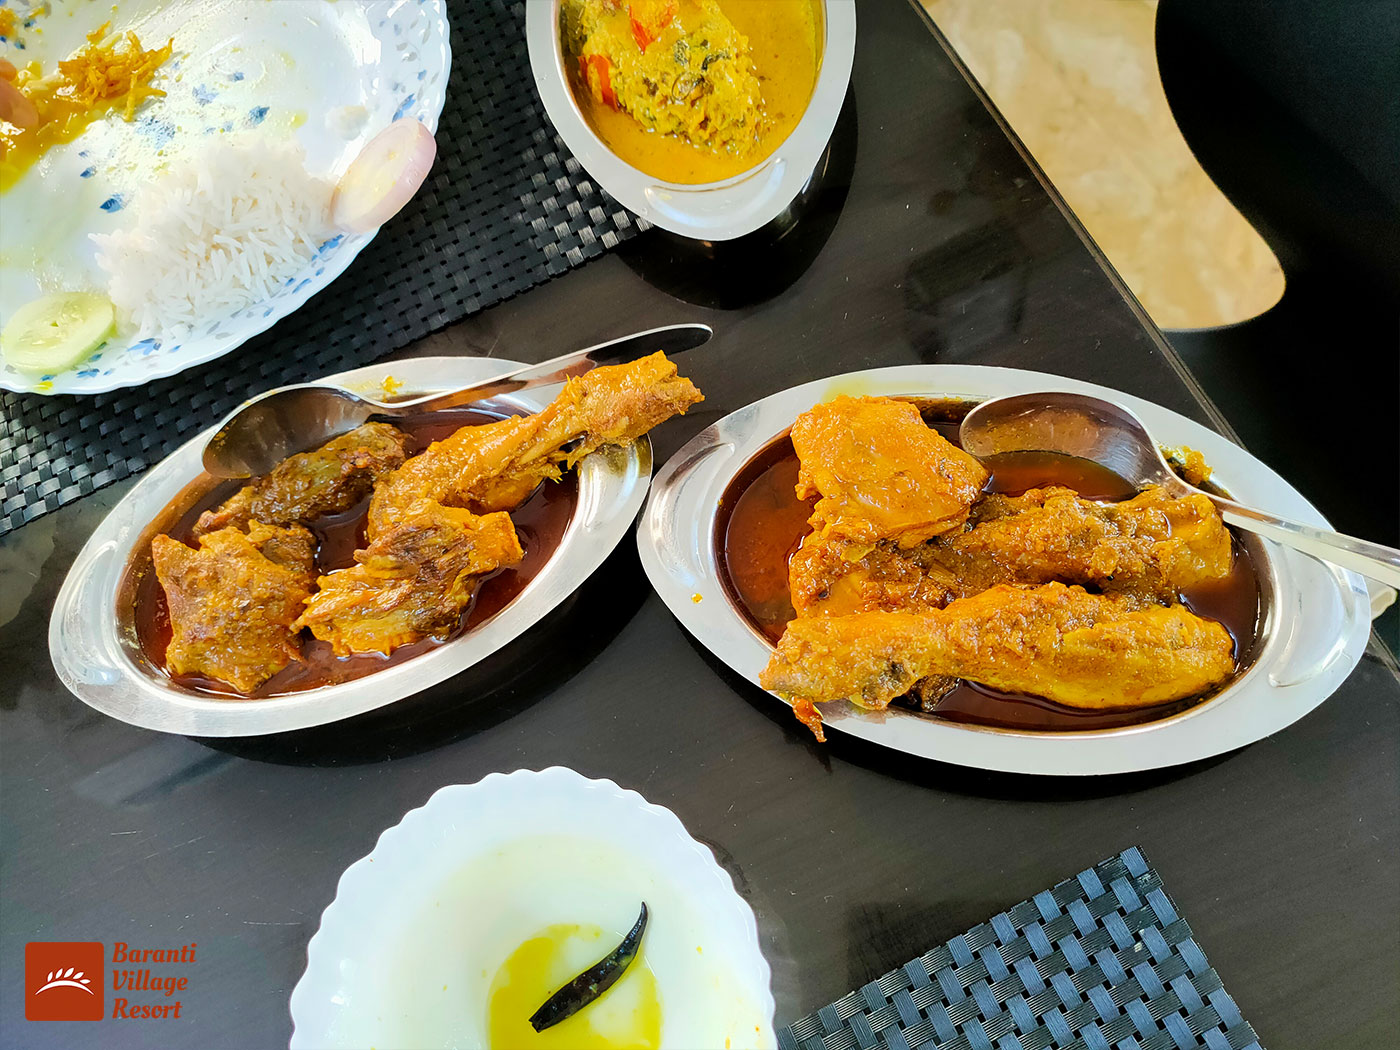 Baranti Village Resort Lunch - Chicken 2 Plate